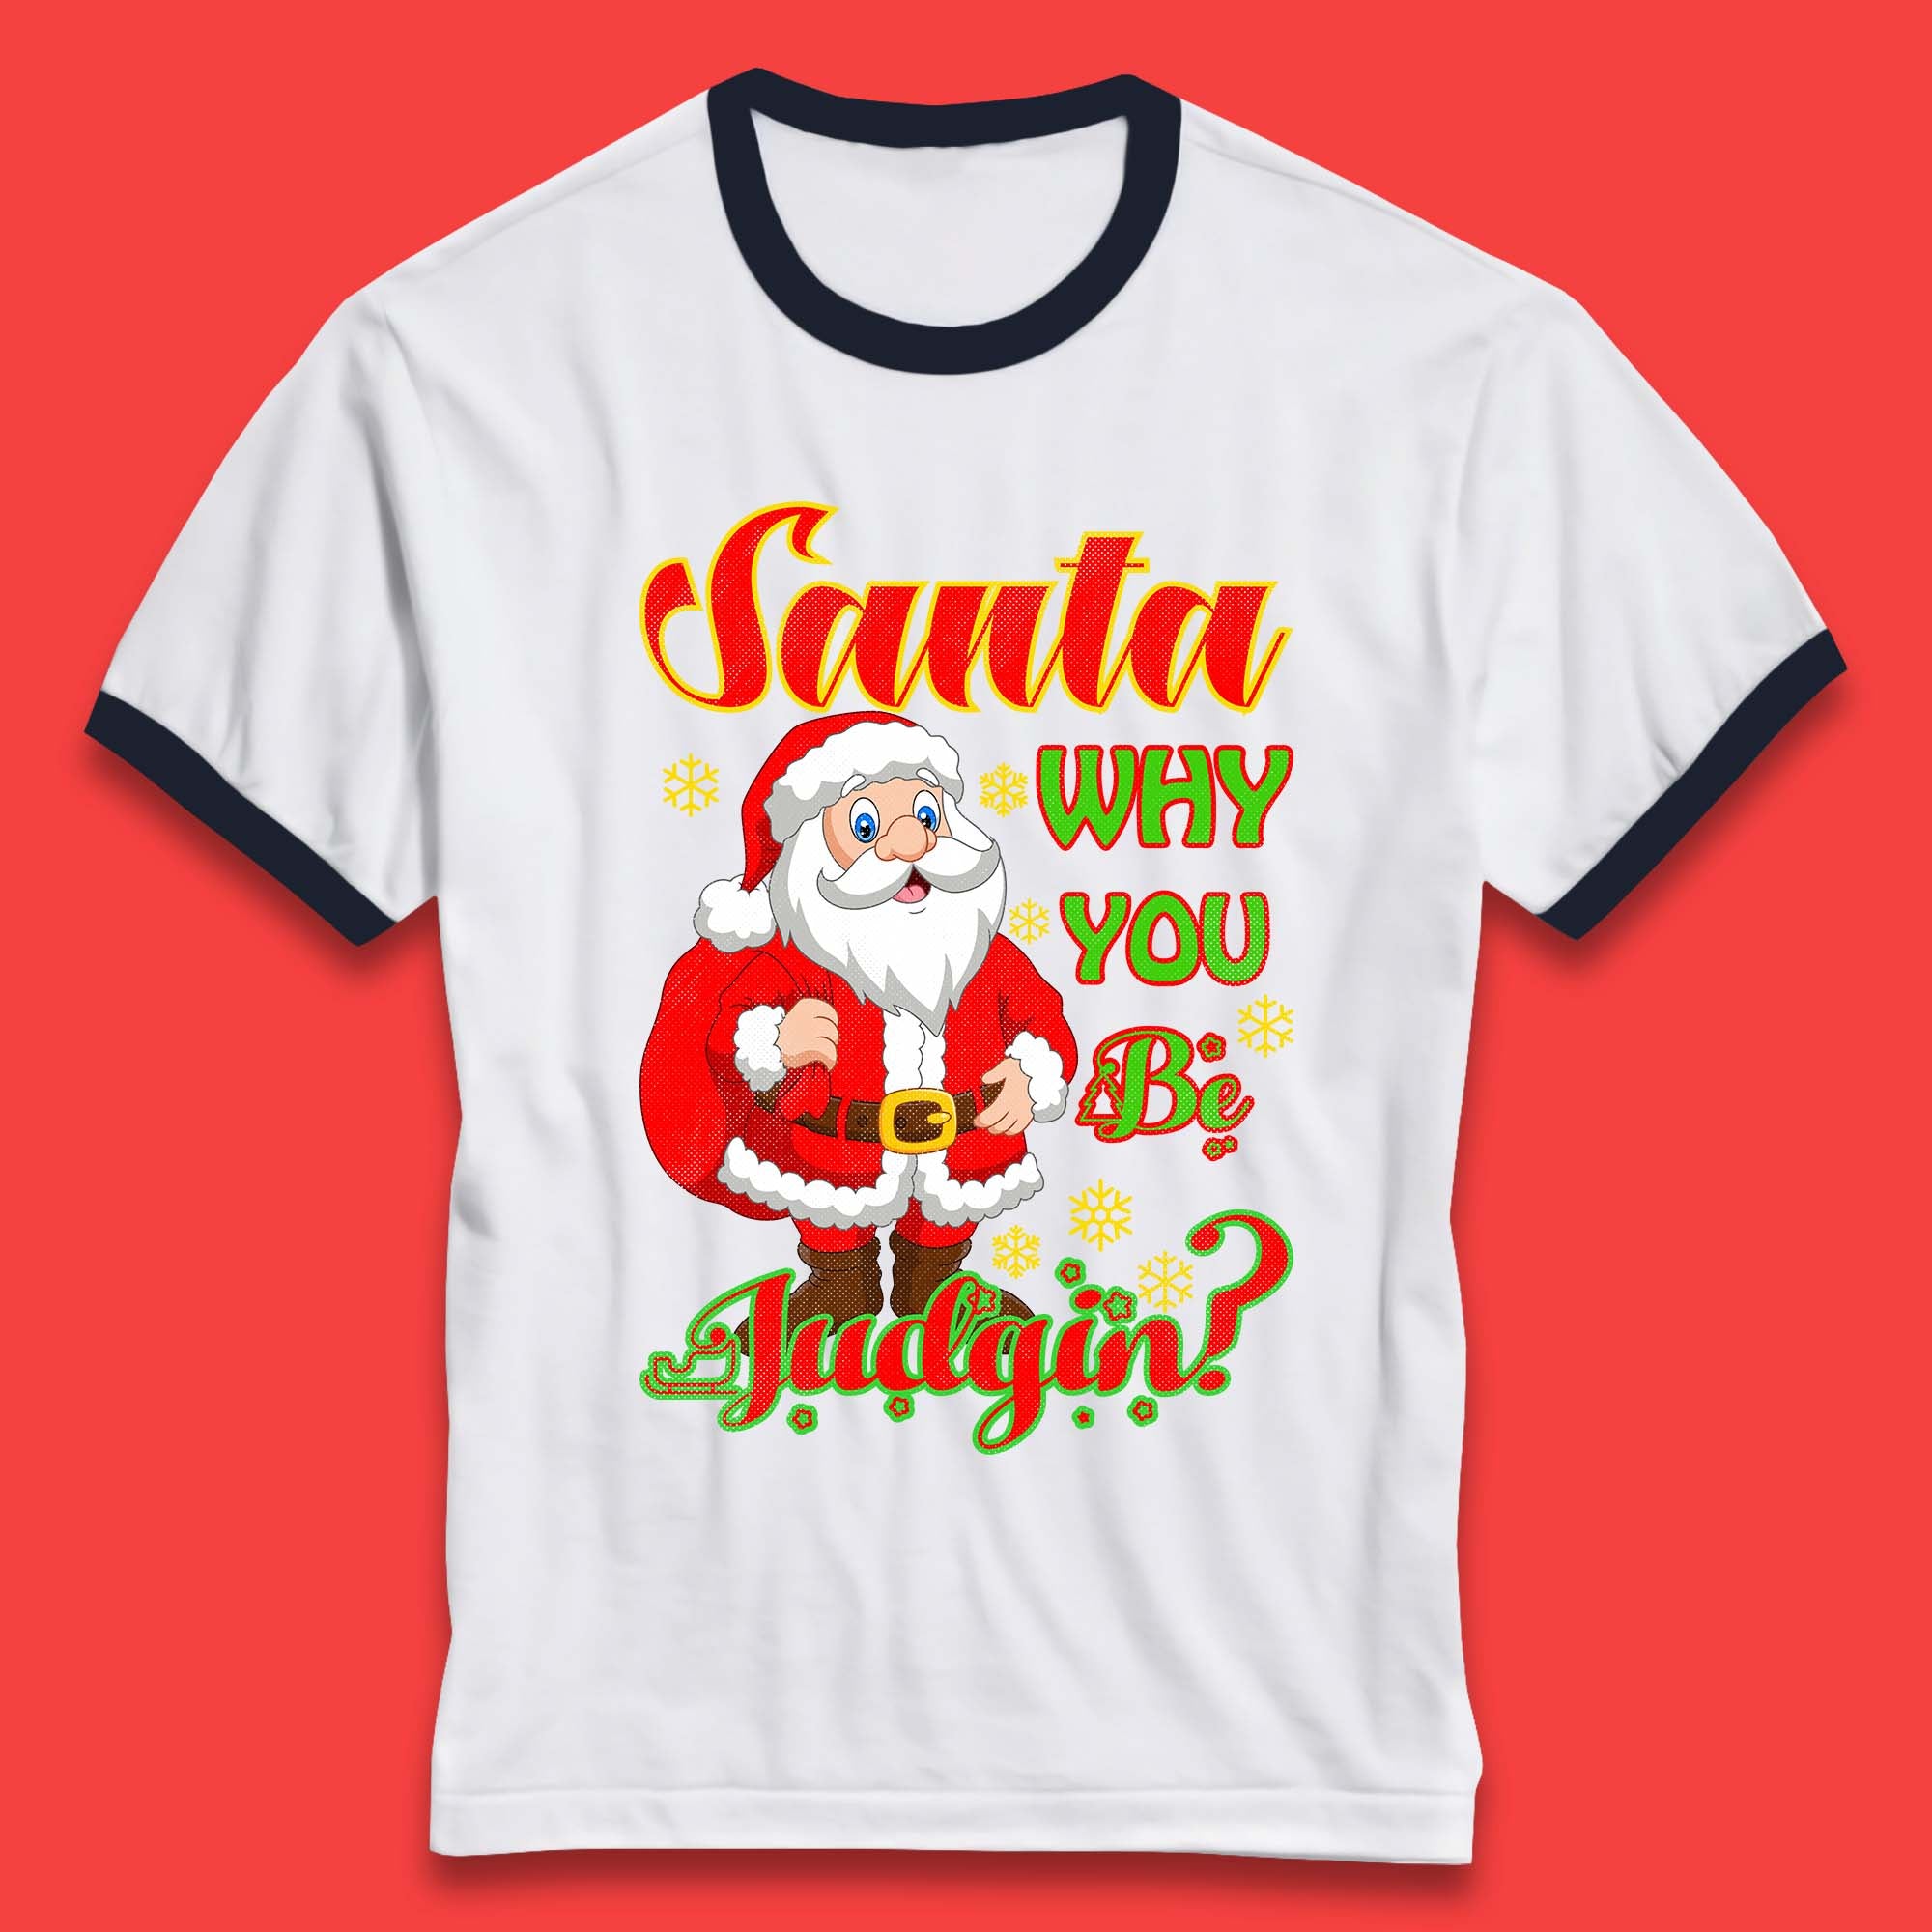 Santa Why You Be Judgin? Christmas Judging Funny Holiday Season Xmas Ringer T Shirt